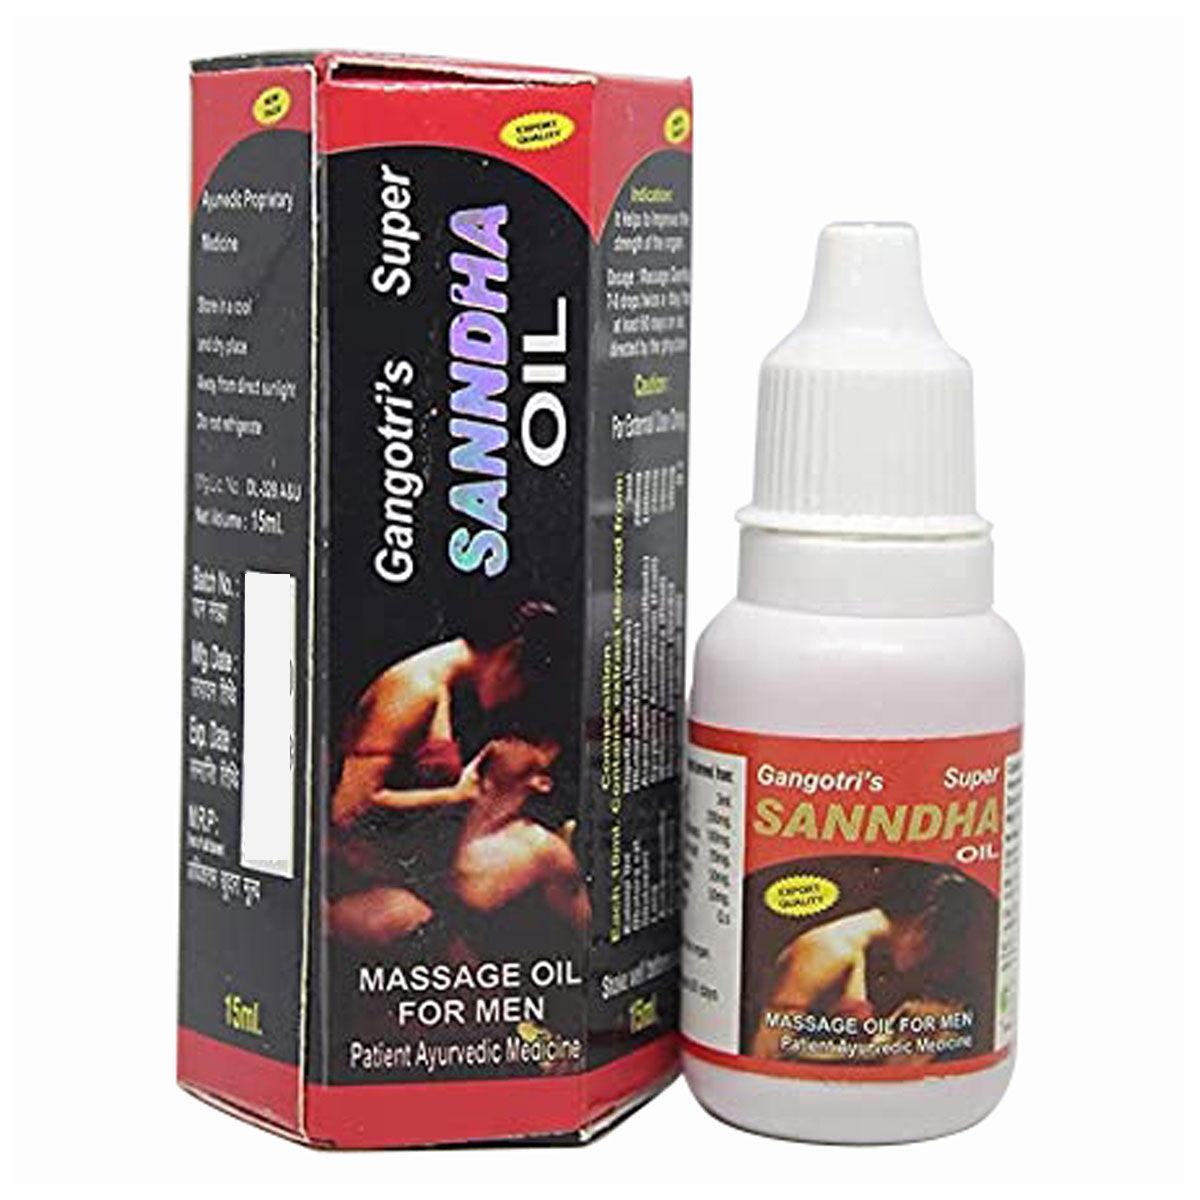 Buy Gangotri's Sanndha Massage Oil for Men, 15 ml Online